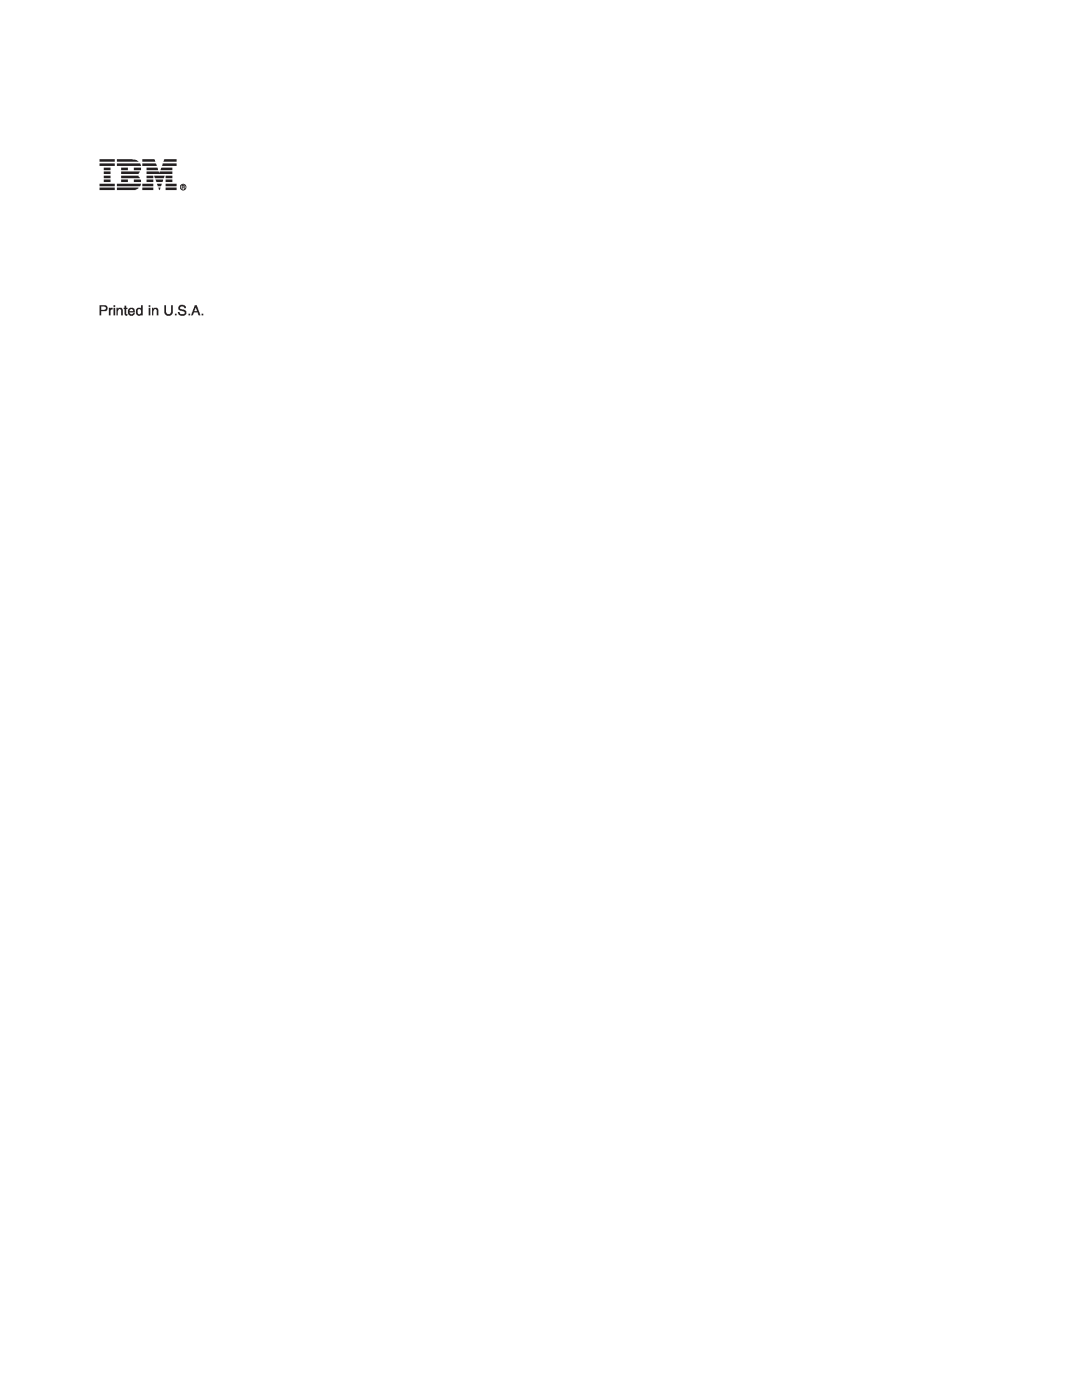 IBM AS/400 manual Printed in U.S.A 